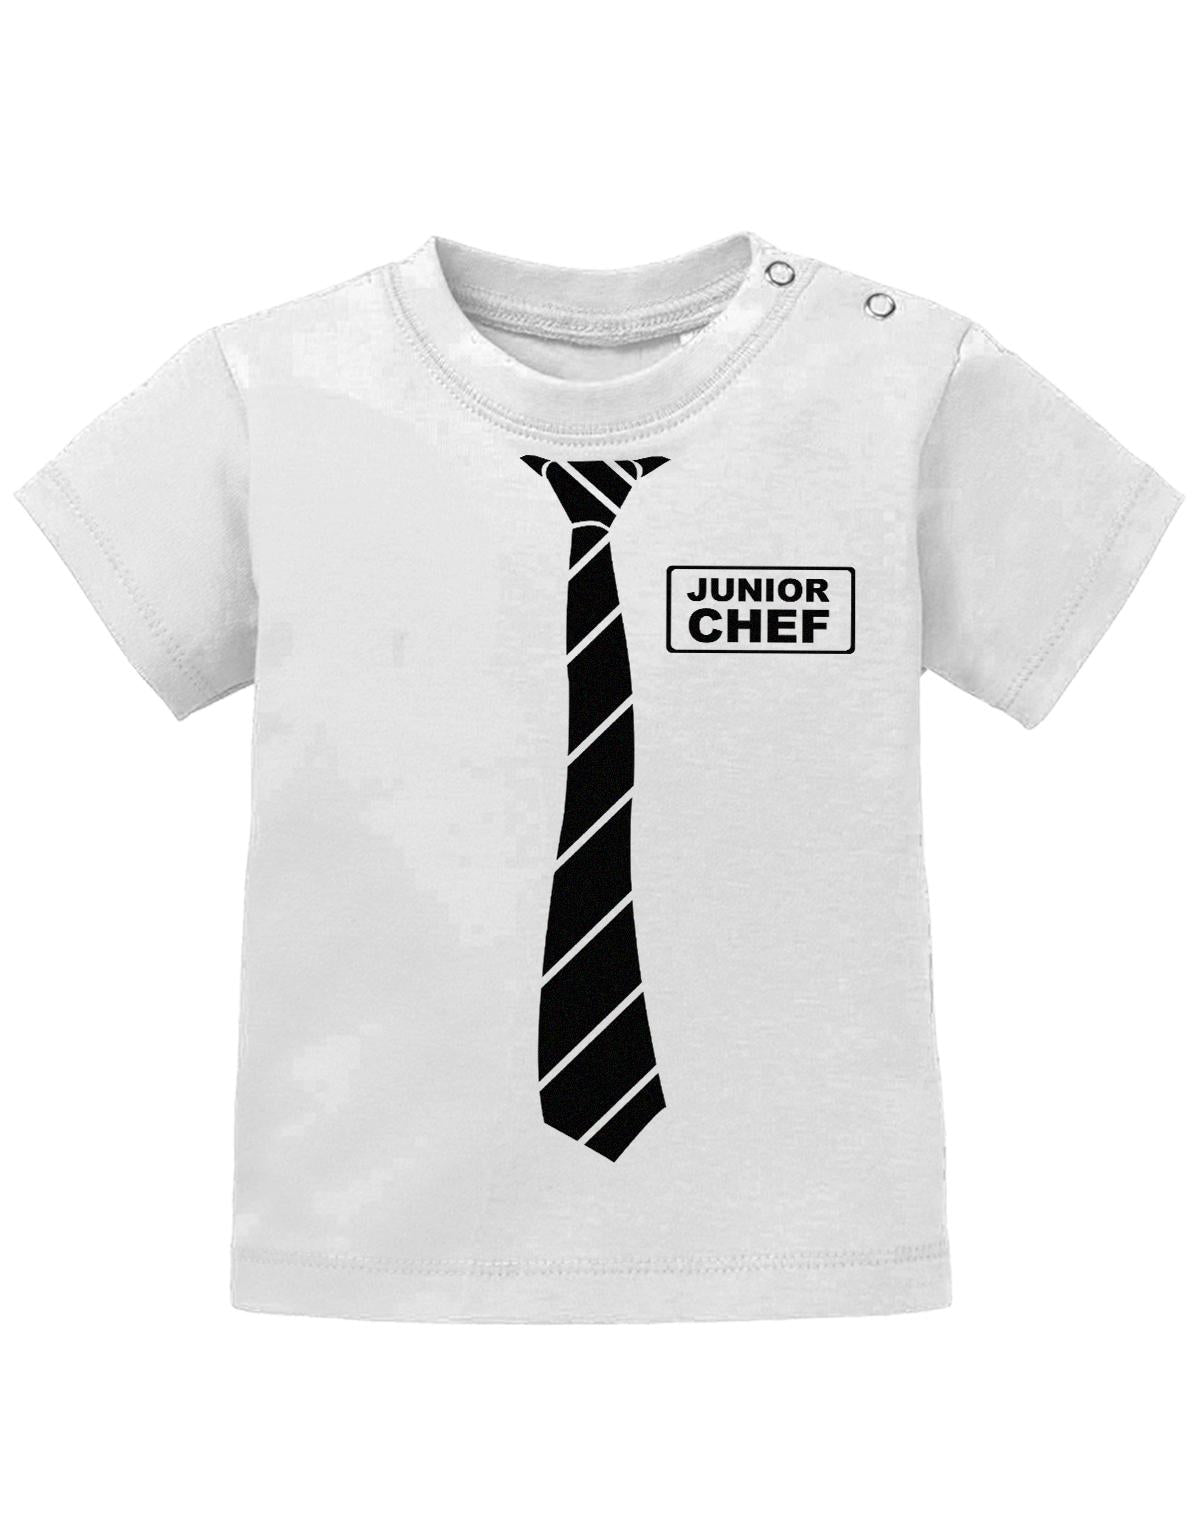 Lustiges Sprüche Baby Shirt Schöne Business Krawatte und Junior Chef Schild. Weiss